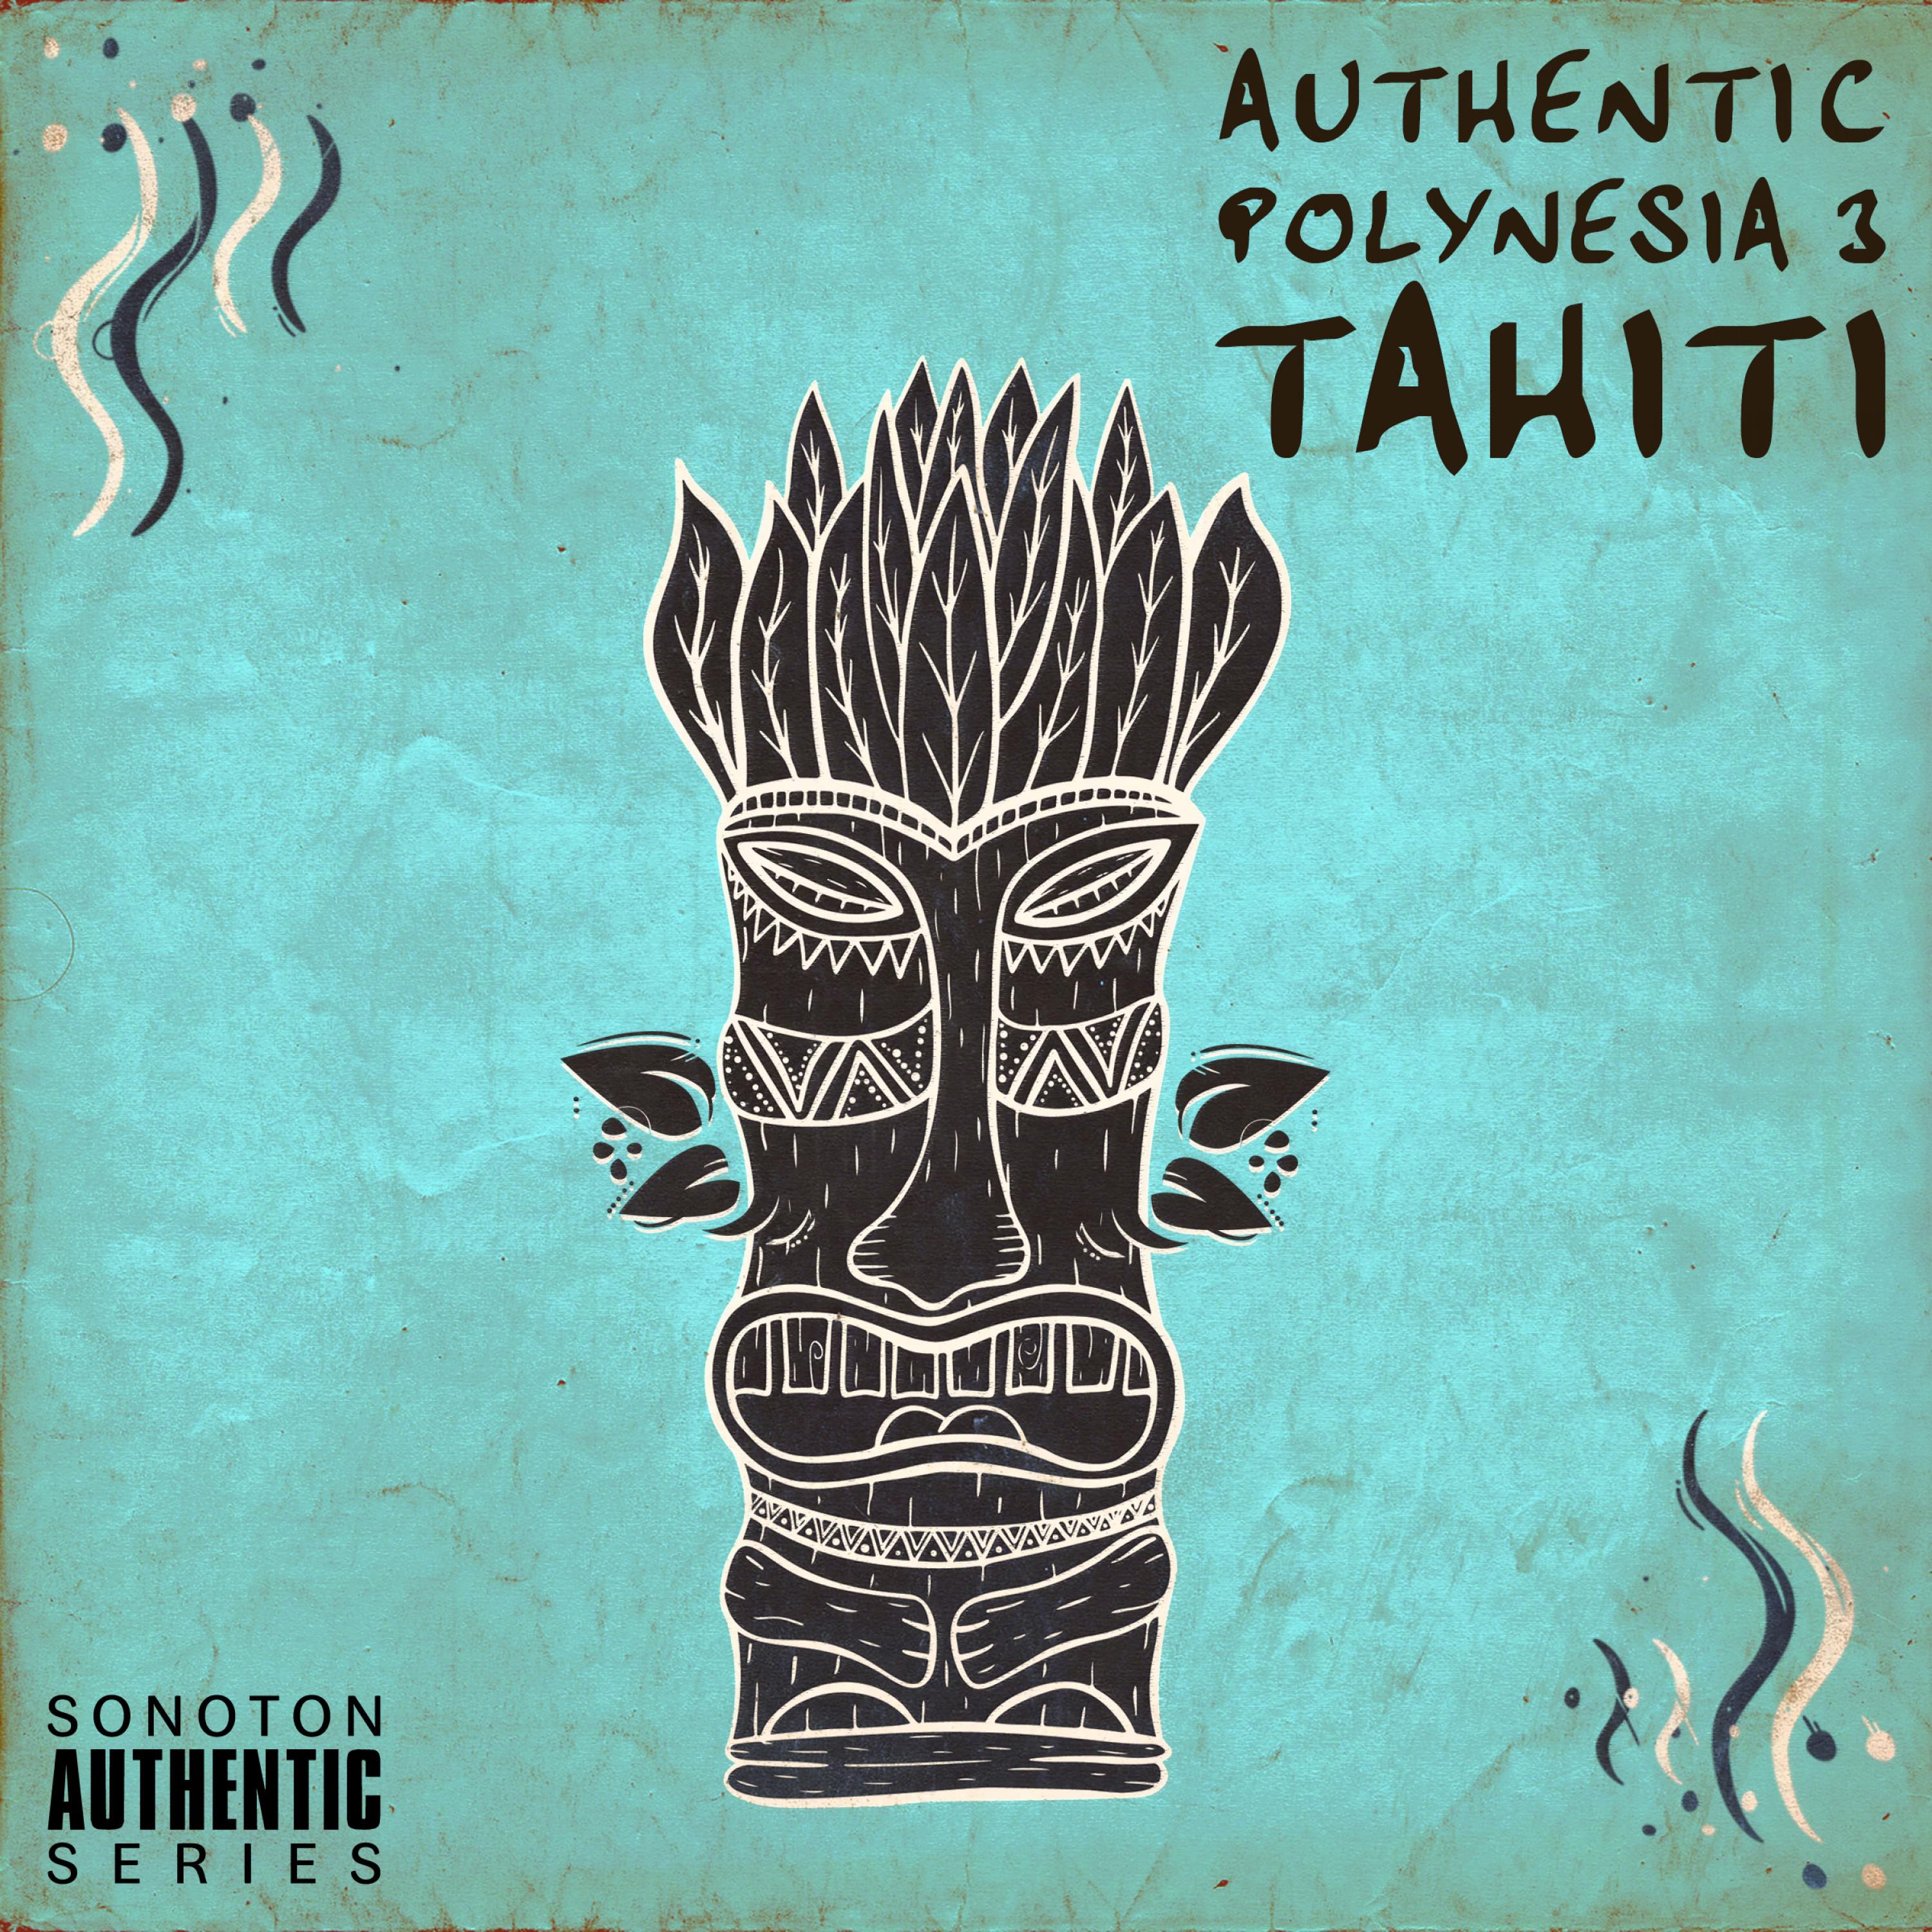 Tunui's Royal Polynesians - I Te Pae Tatahi